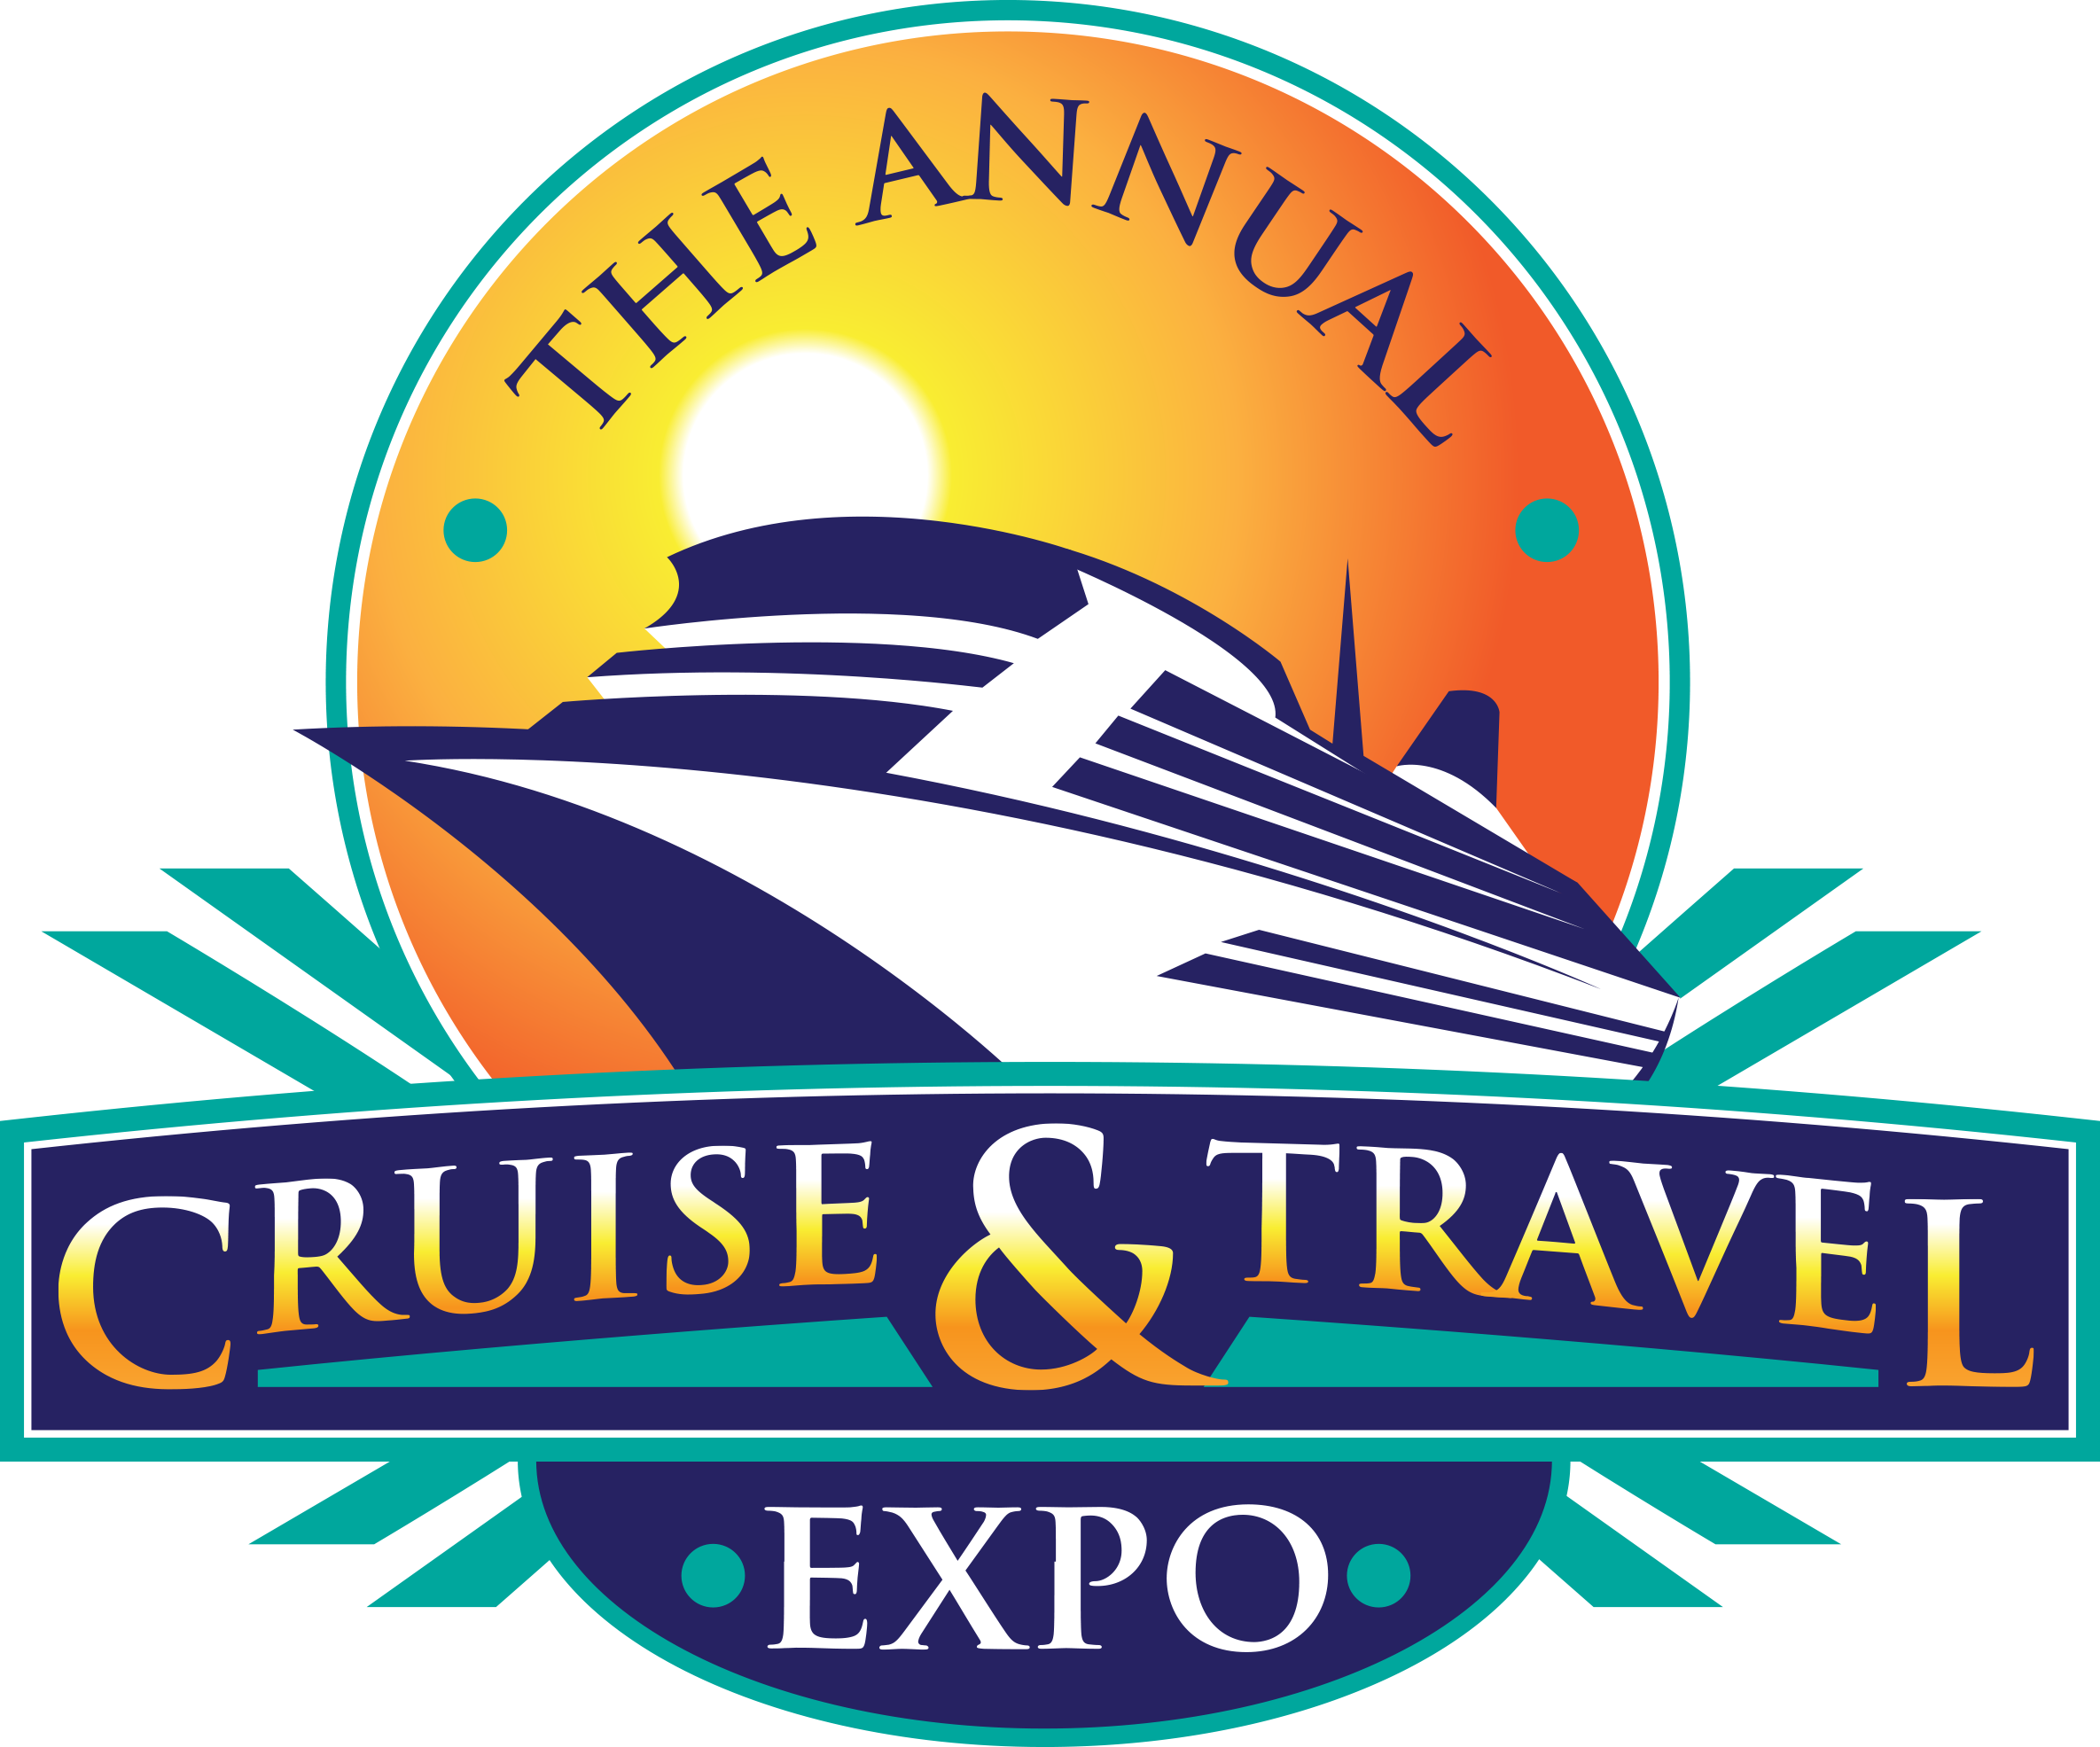 Cruise And Travel Expo - Cruise And Travel Expo (2369x1971)